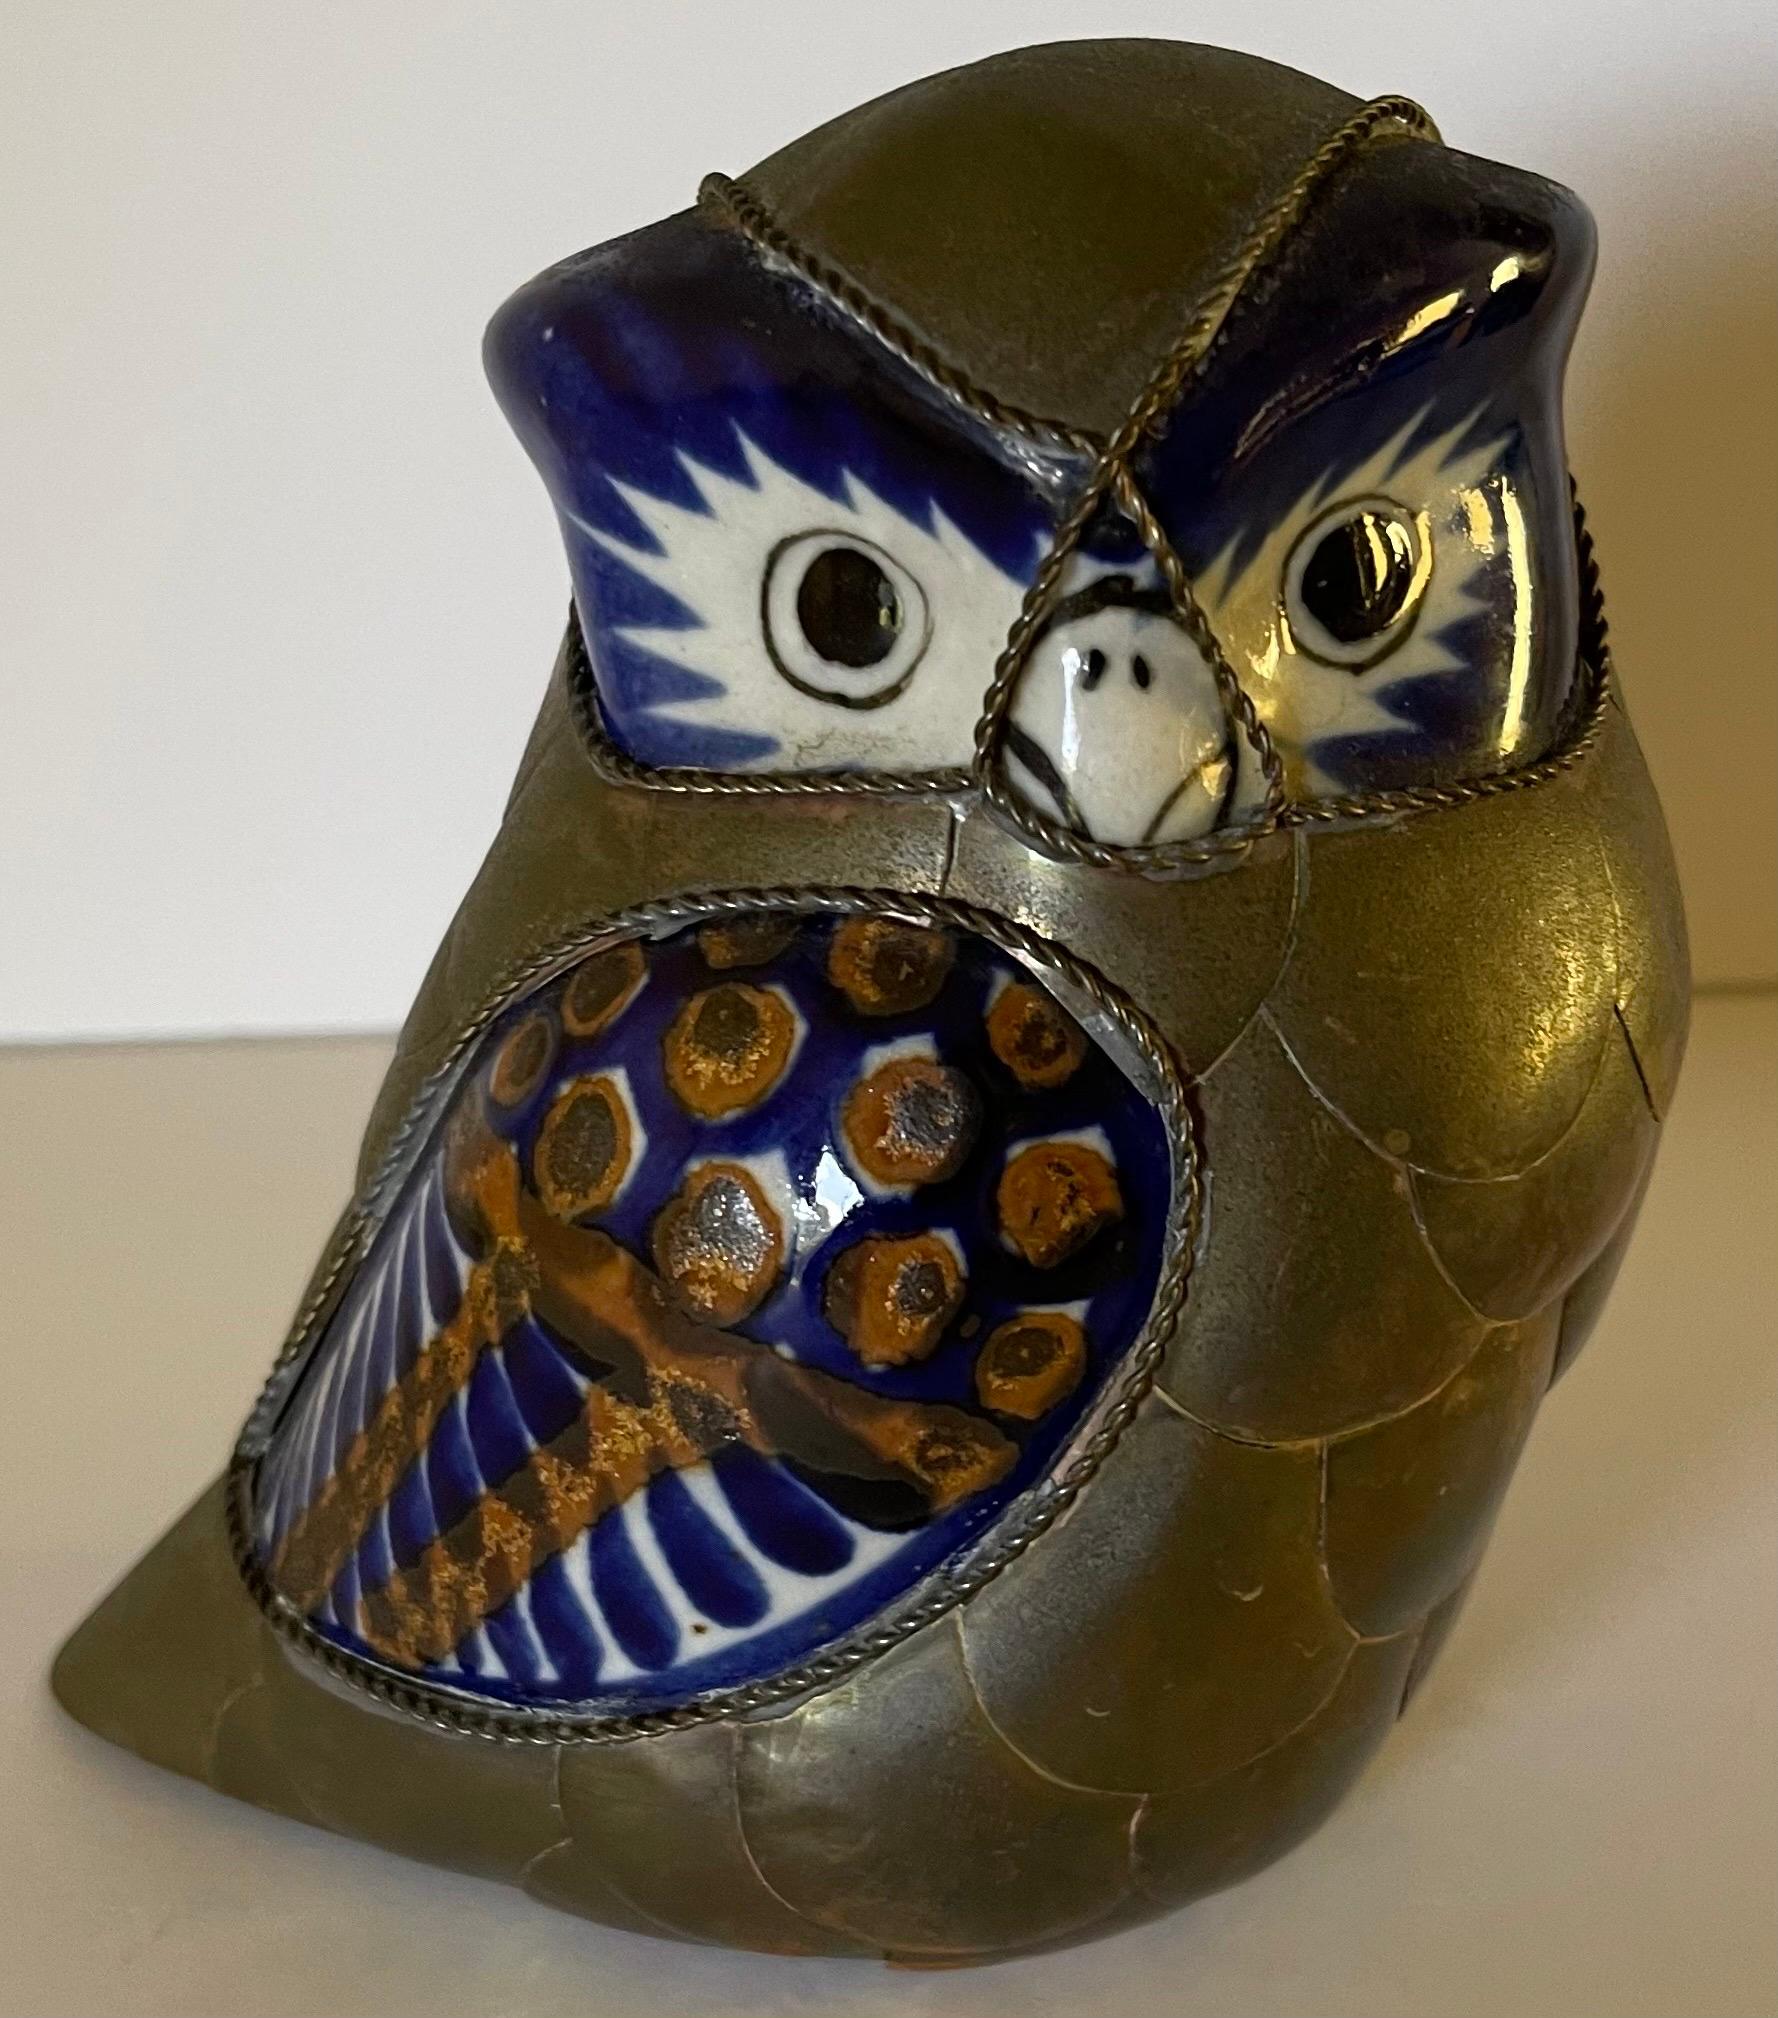 Ensemble de deux oiseaux décoratifs en laiton et céramique des années 1970. Dans le style de Sergio Bustamante. Laiton bruni et céramique peinte en bleu/blanc. Pas de signature d'artiste ni de cachet de marque. 
Hibou : 5,5